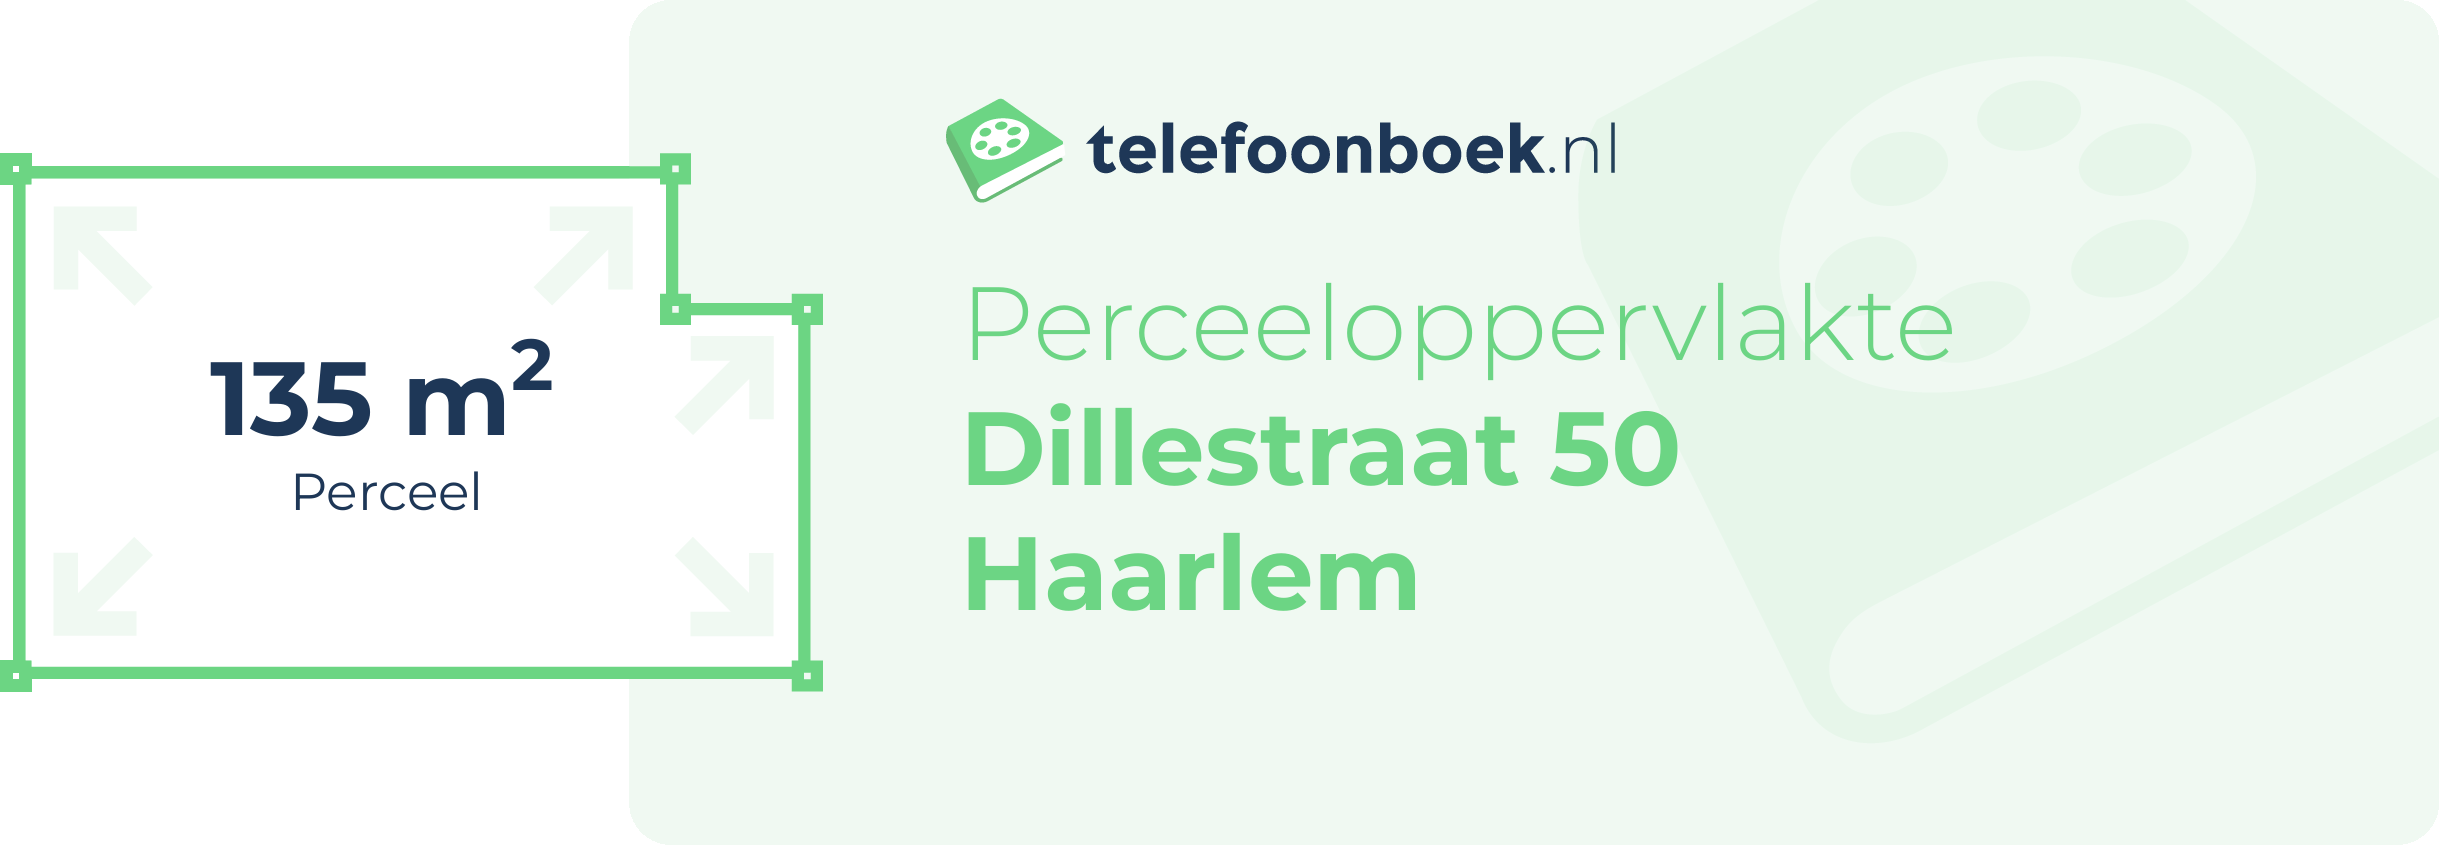 Perceeloppervlakte Dillestraat 50 Haarlem